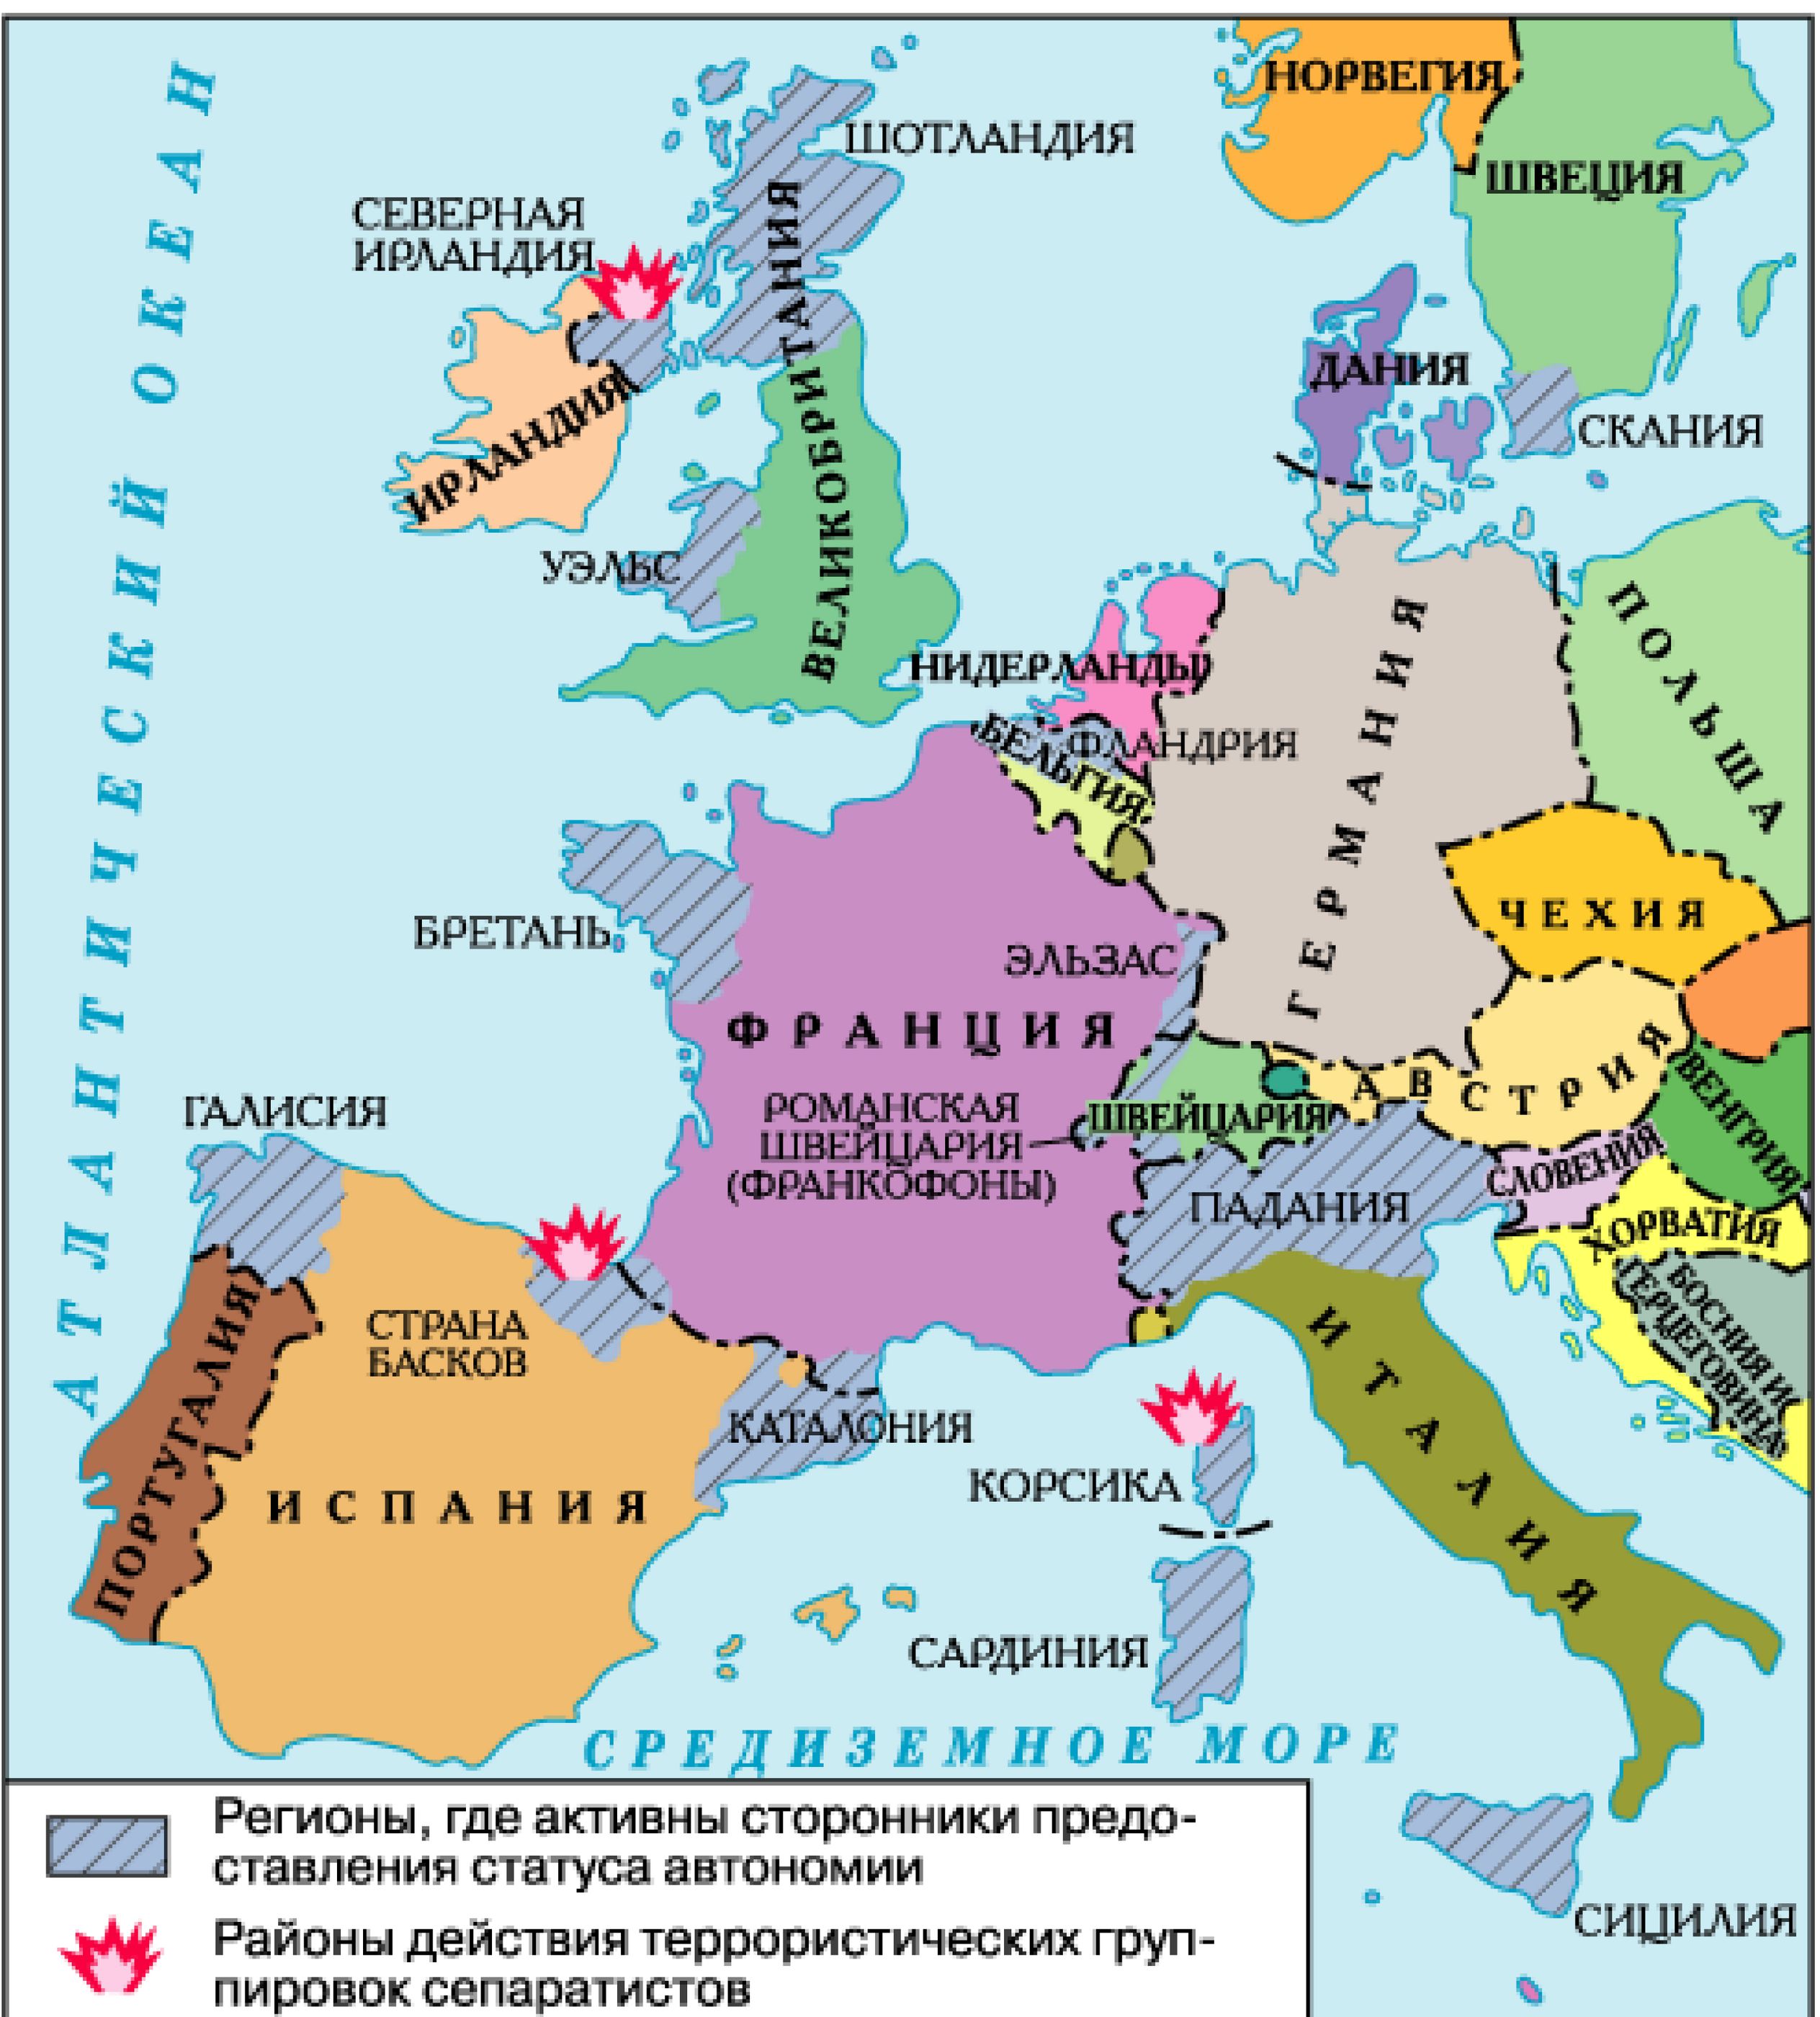 Политические страны. Карта Западной Европы со странами. Политическая карта зарубежной Европы со странами. Политическая карта зарубежной Европы со странами и столицами. Западная Европа карта страны и столицы.